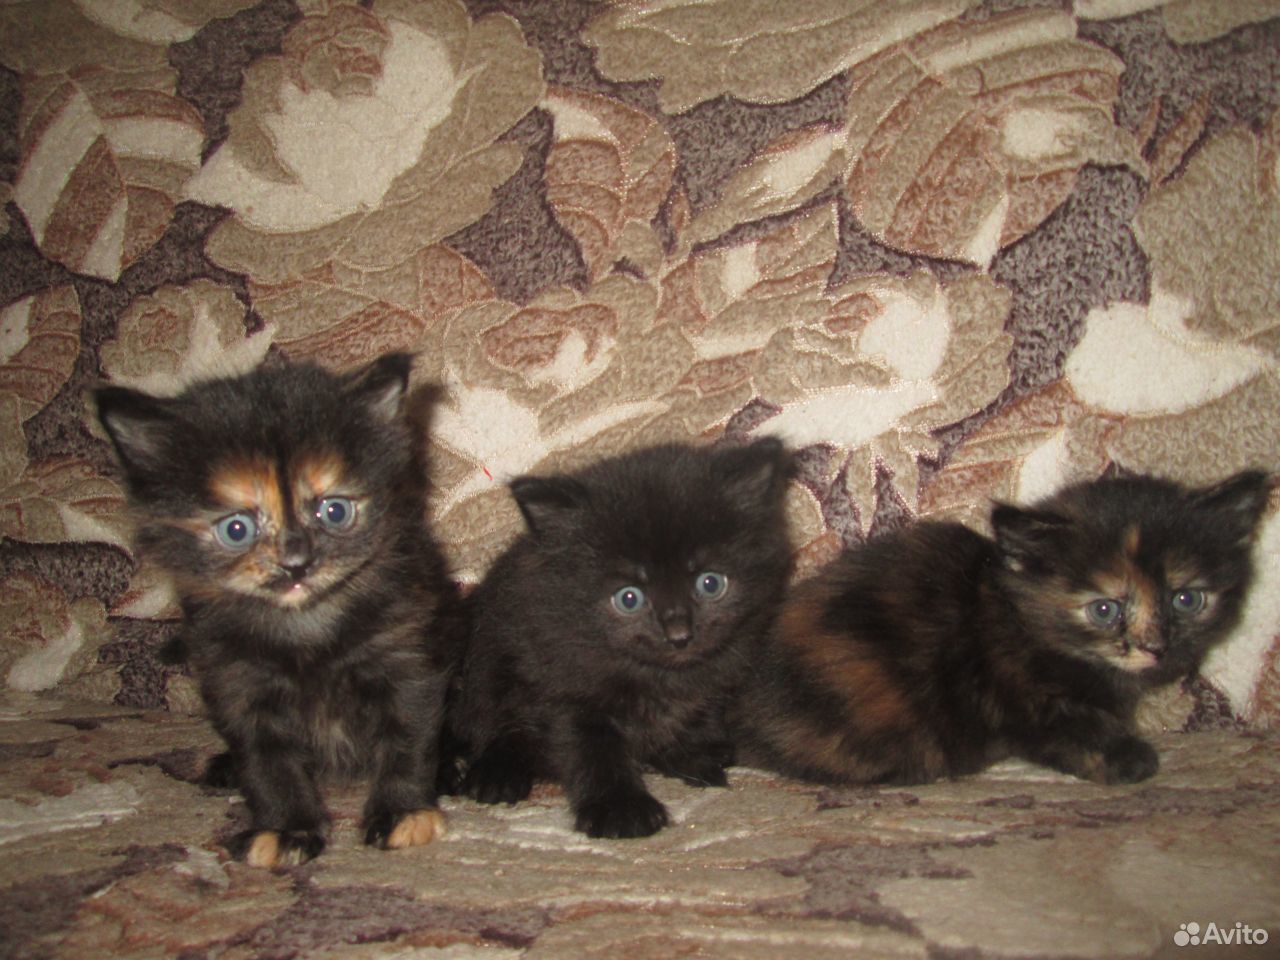 Мама кошка салават. Авито ру Тимашевск фото котят черных трехцветных.